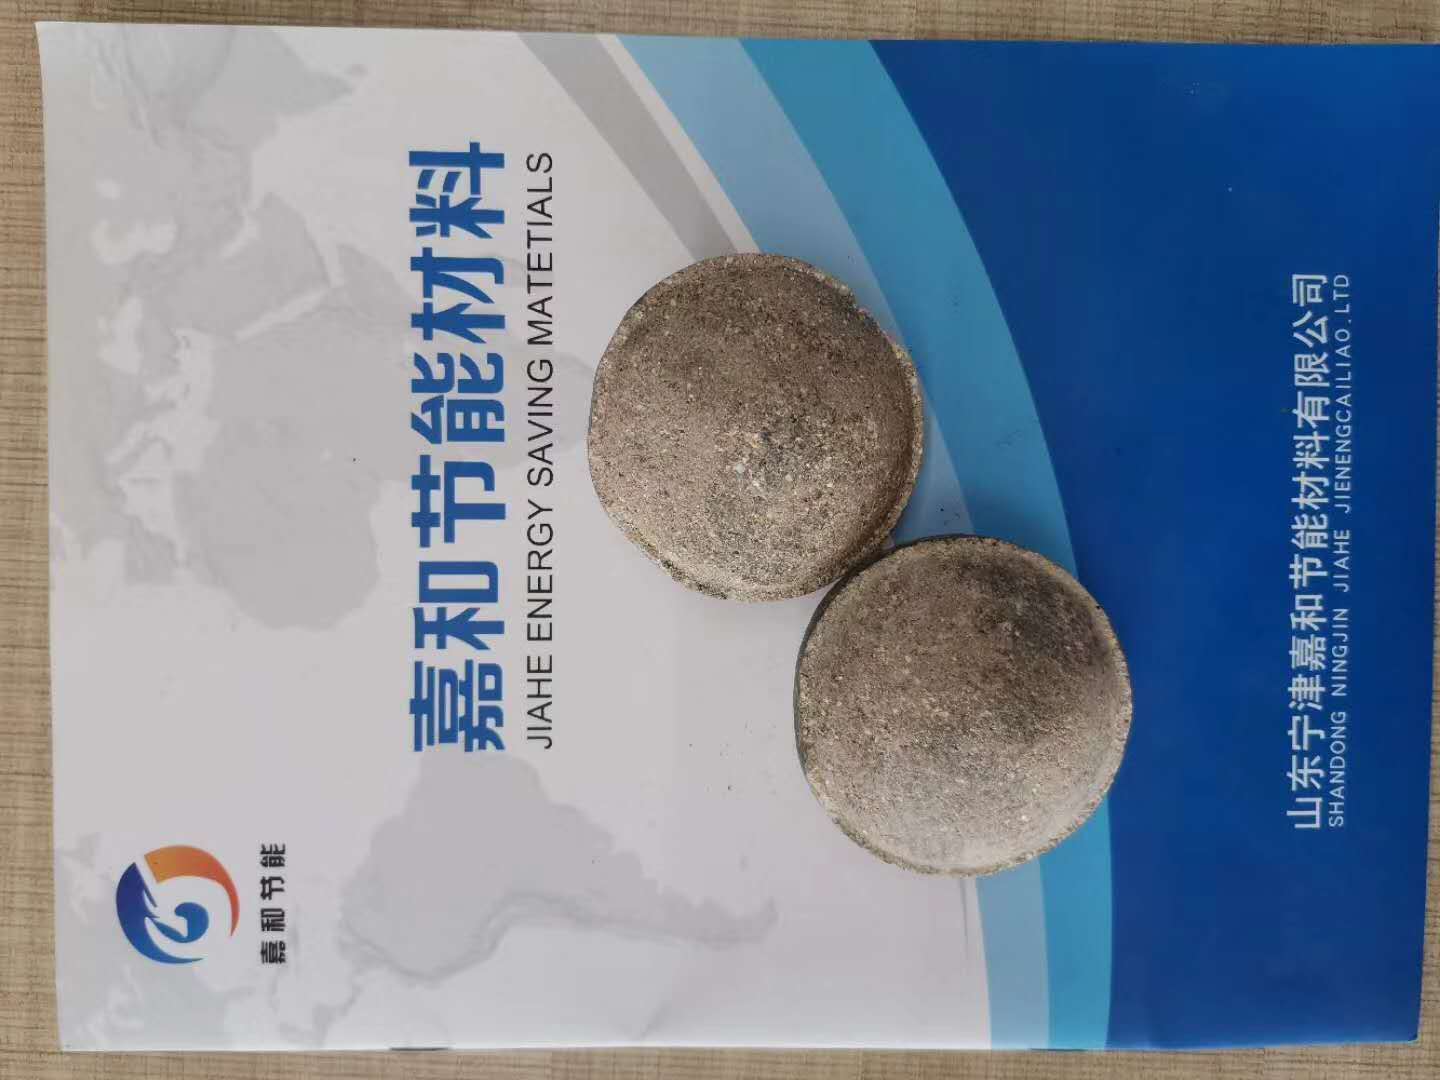 氧化铁皮生产用粘合剂 工业淀粉 萤石球生产用粘合剂 山东嘉和5